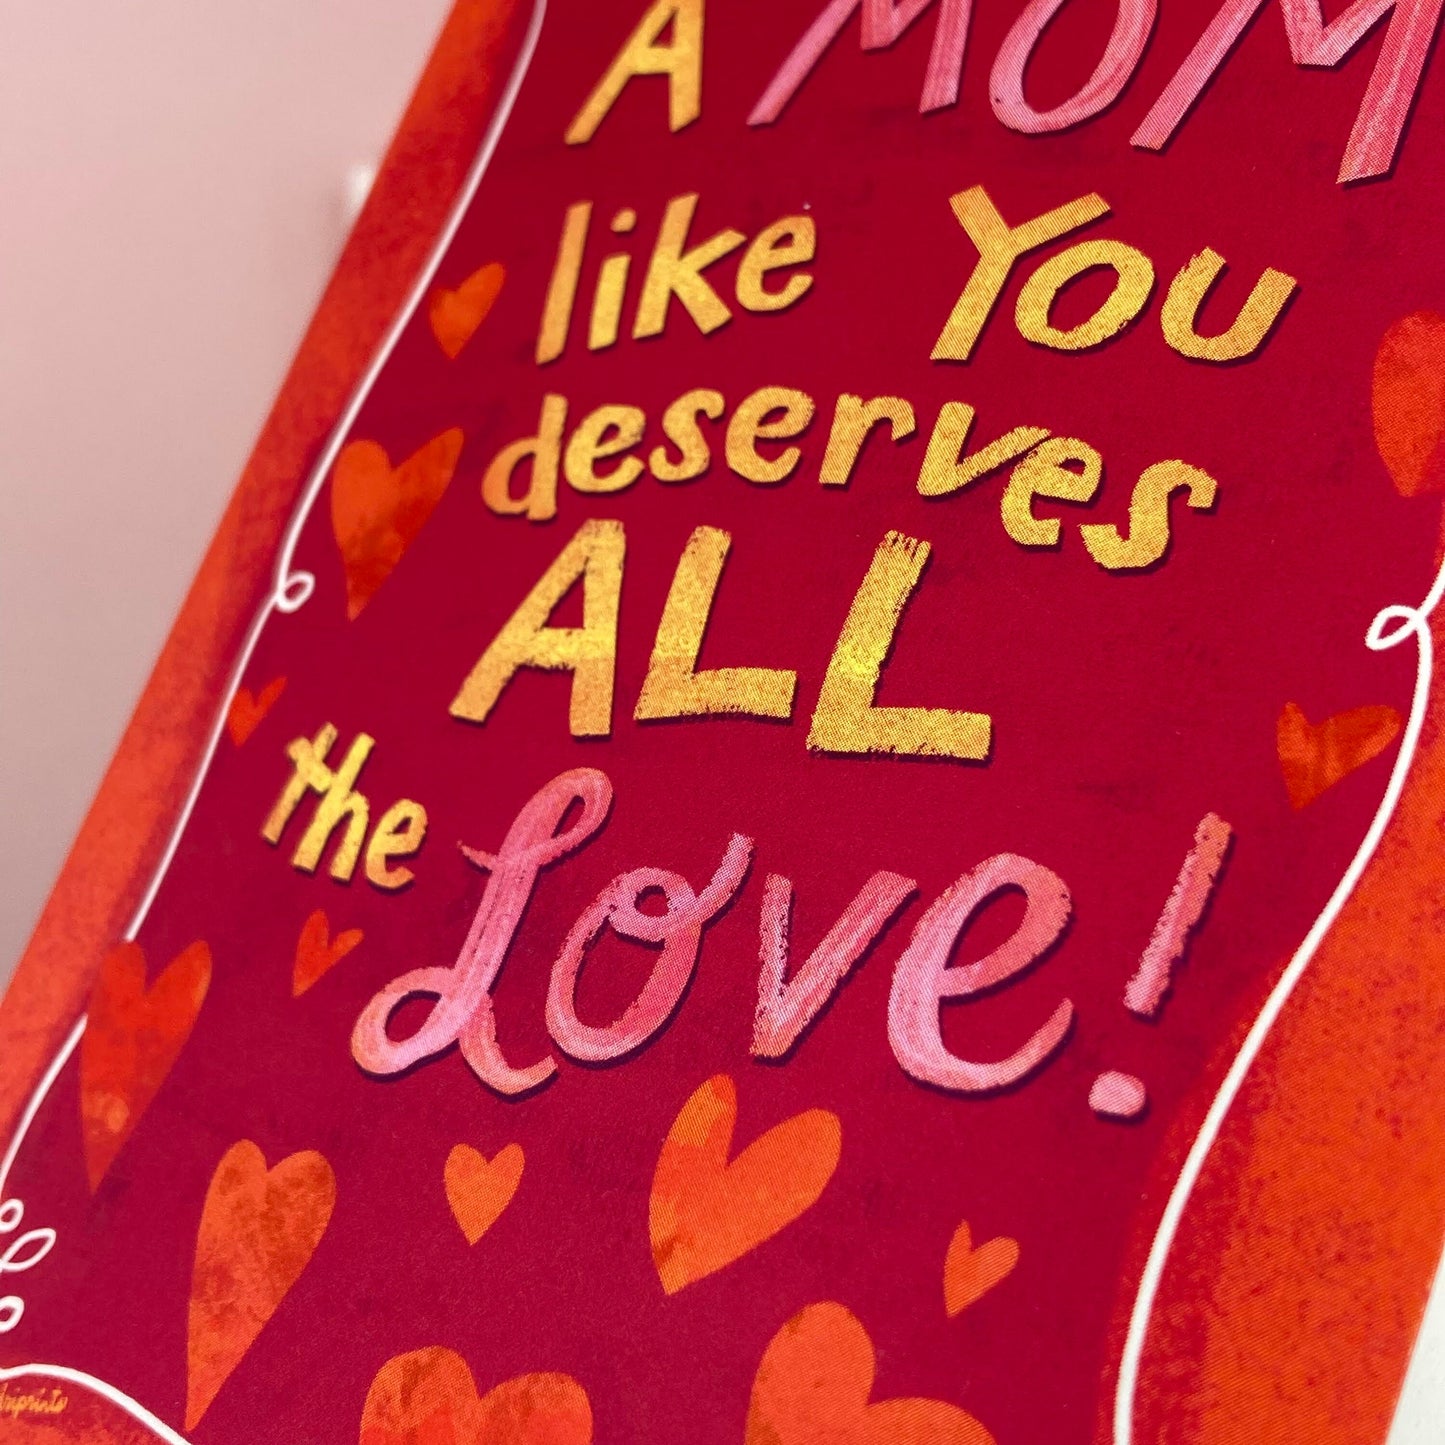 LOVE - Mom Deserves Love - Greeting Card for Mom, Sister, Grandma, Mom Friends, art by Adriana Bergstrom (Adriprints)